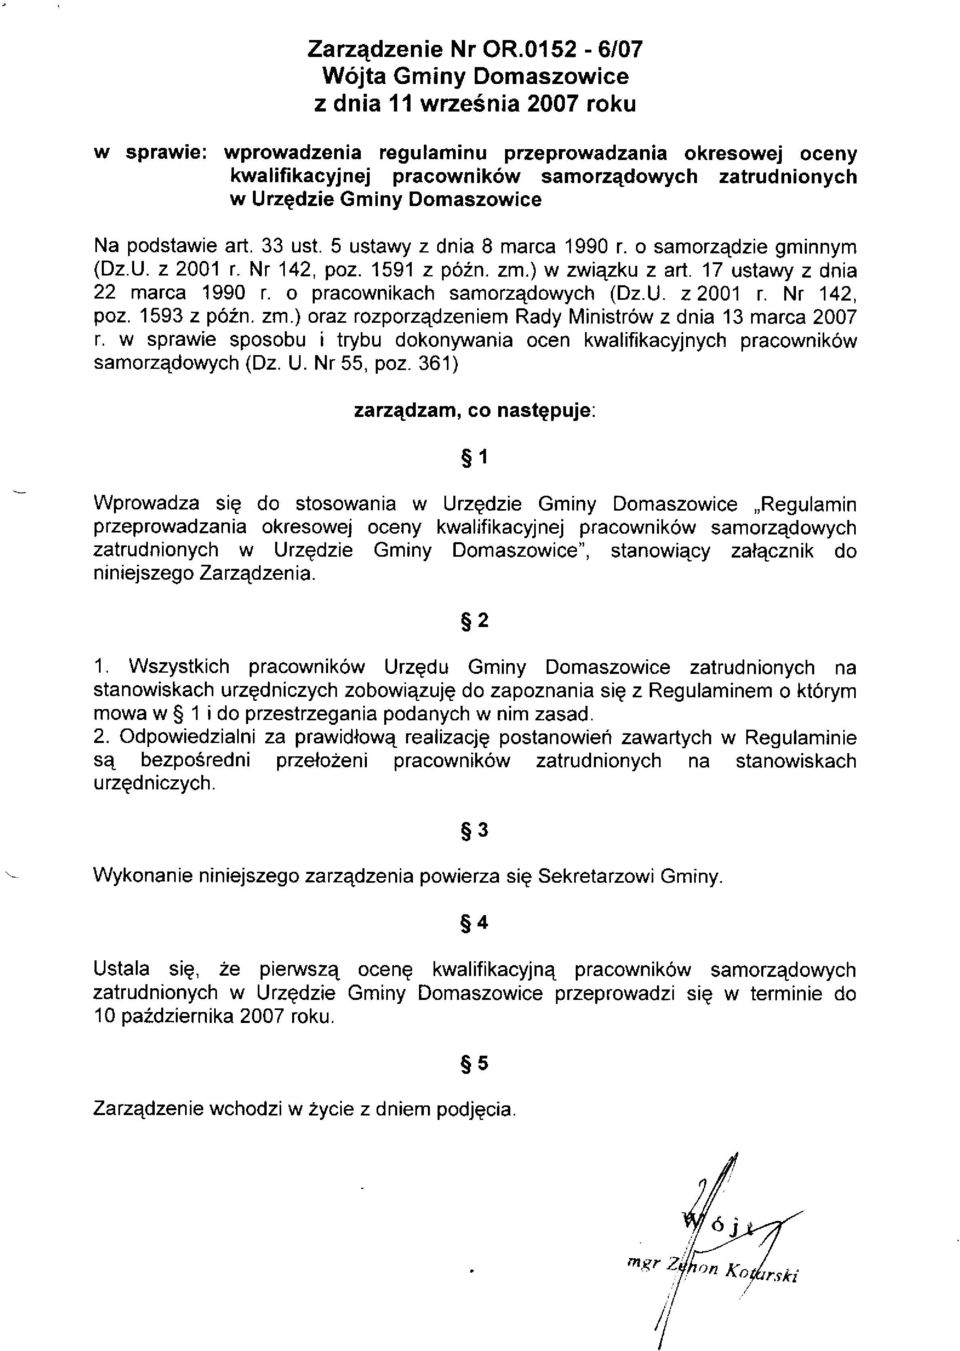 Gminy Domaszowice Na podstawie art. 33 ust. 5 ustawy z dnia 8 marca 1990 r. o samorzqdzie gminnym (Dz.U. z 2001 r. Nr 142, poz. 1591 z p62n. zm.) w zwiqzku z arl. 17 ustawy z dnia 22 marca 1990 r.